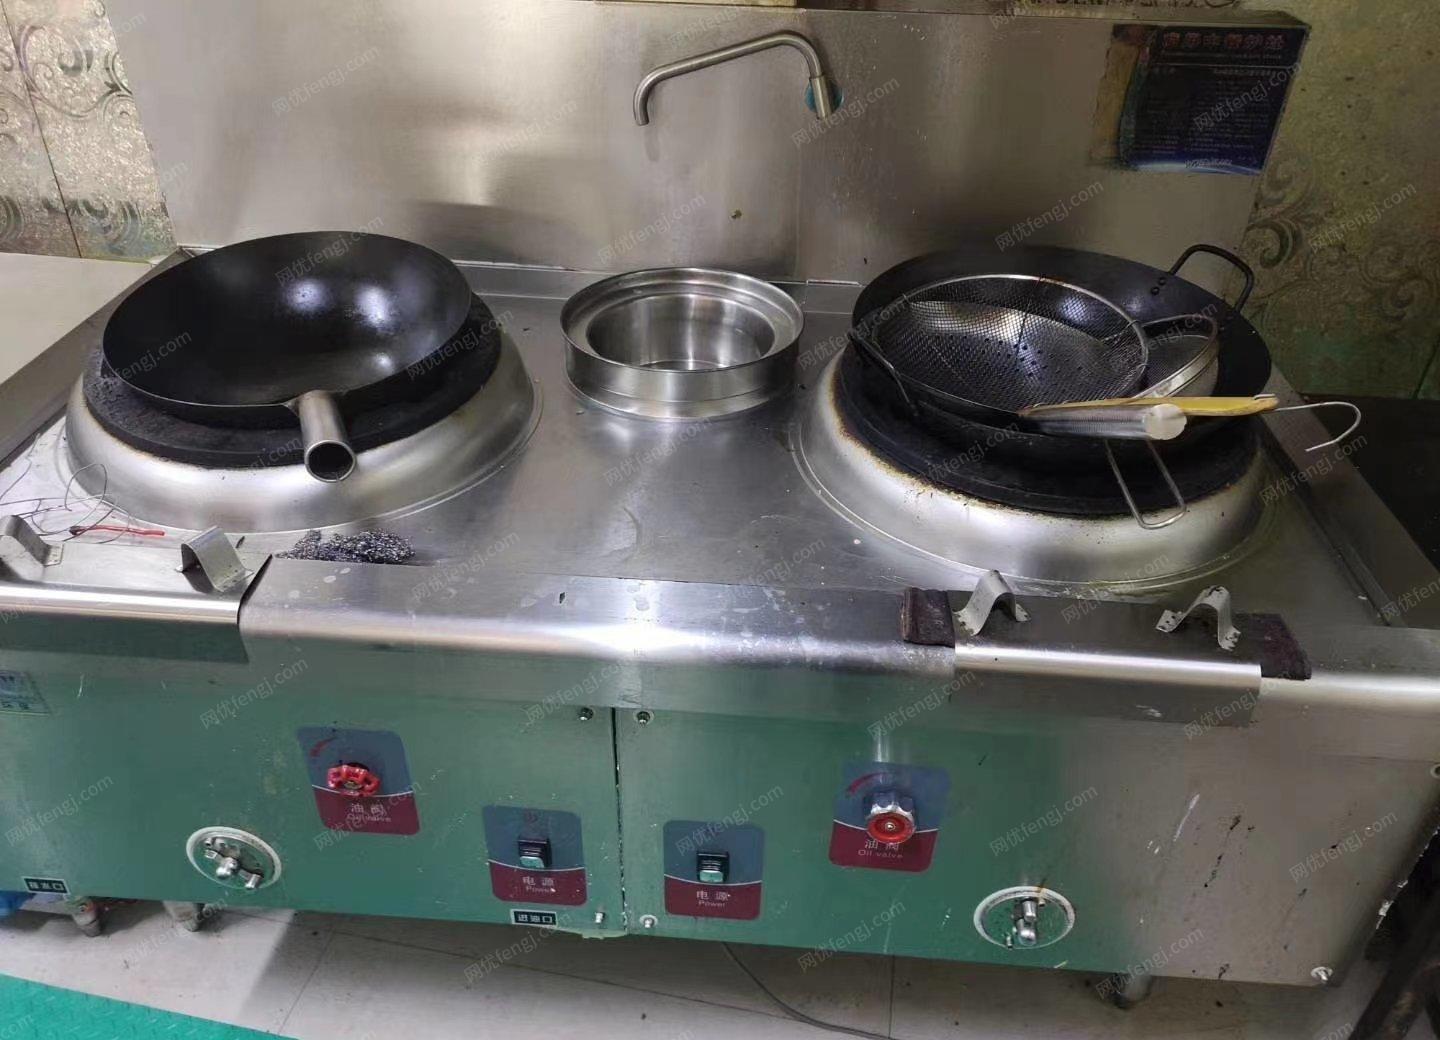 甘肃兰州本人出售二手厨房设备